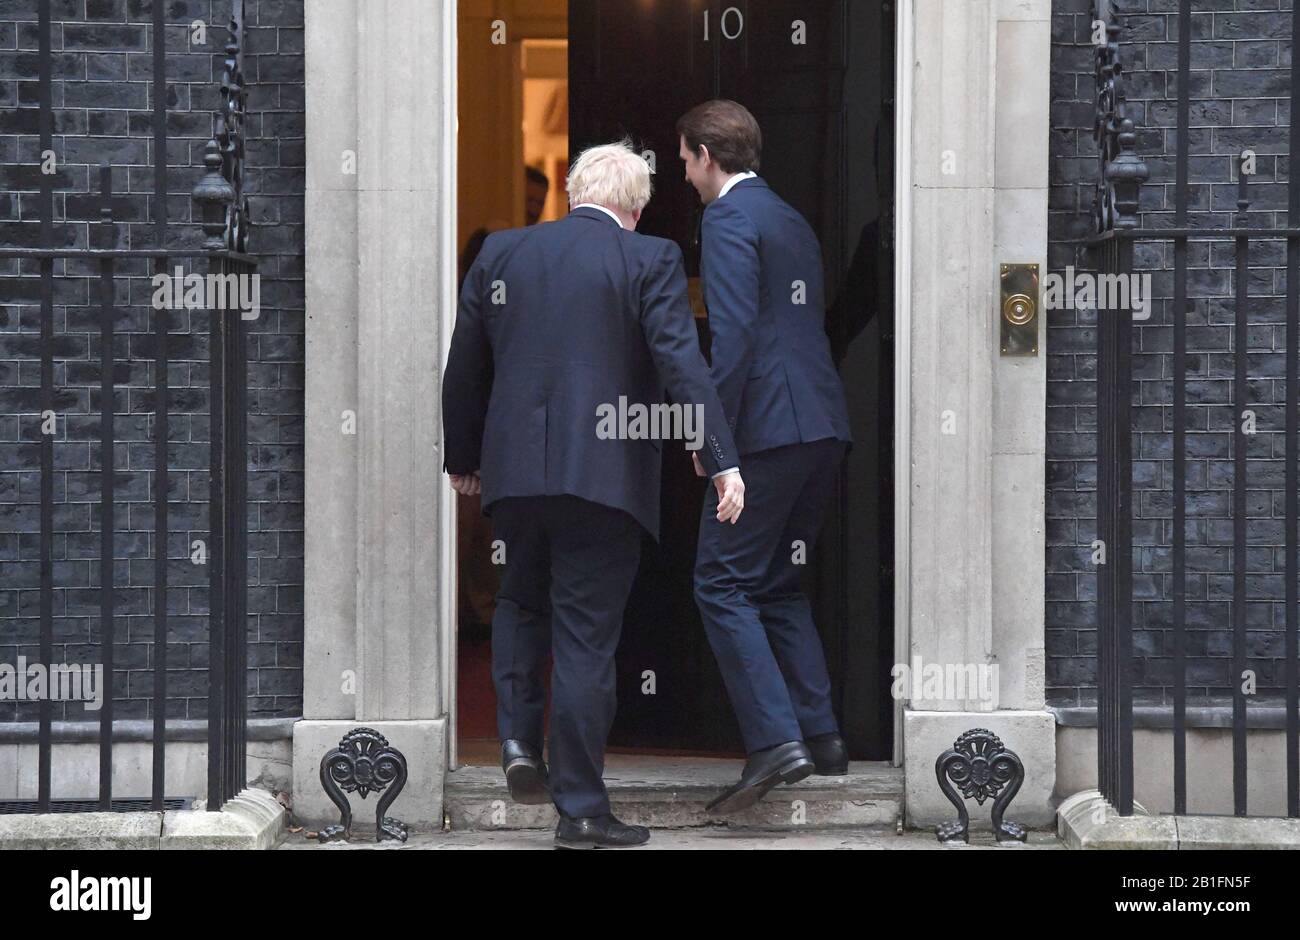 Le Premier ministre Boris Johnson salue le chancelier autrichien Sebastian Kurz sur les pas 10 Downing Street, Londres avant une réunion. Banque D'Images